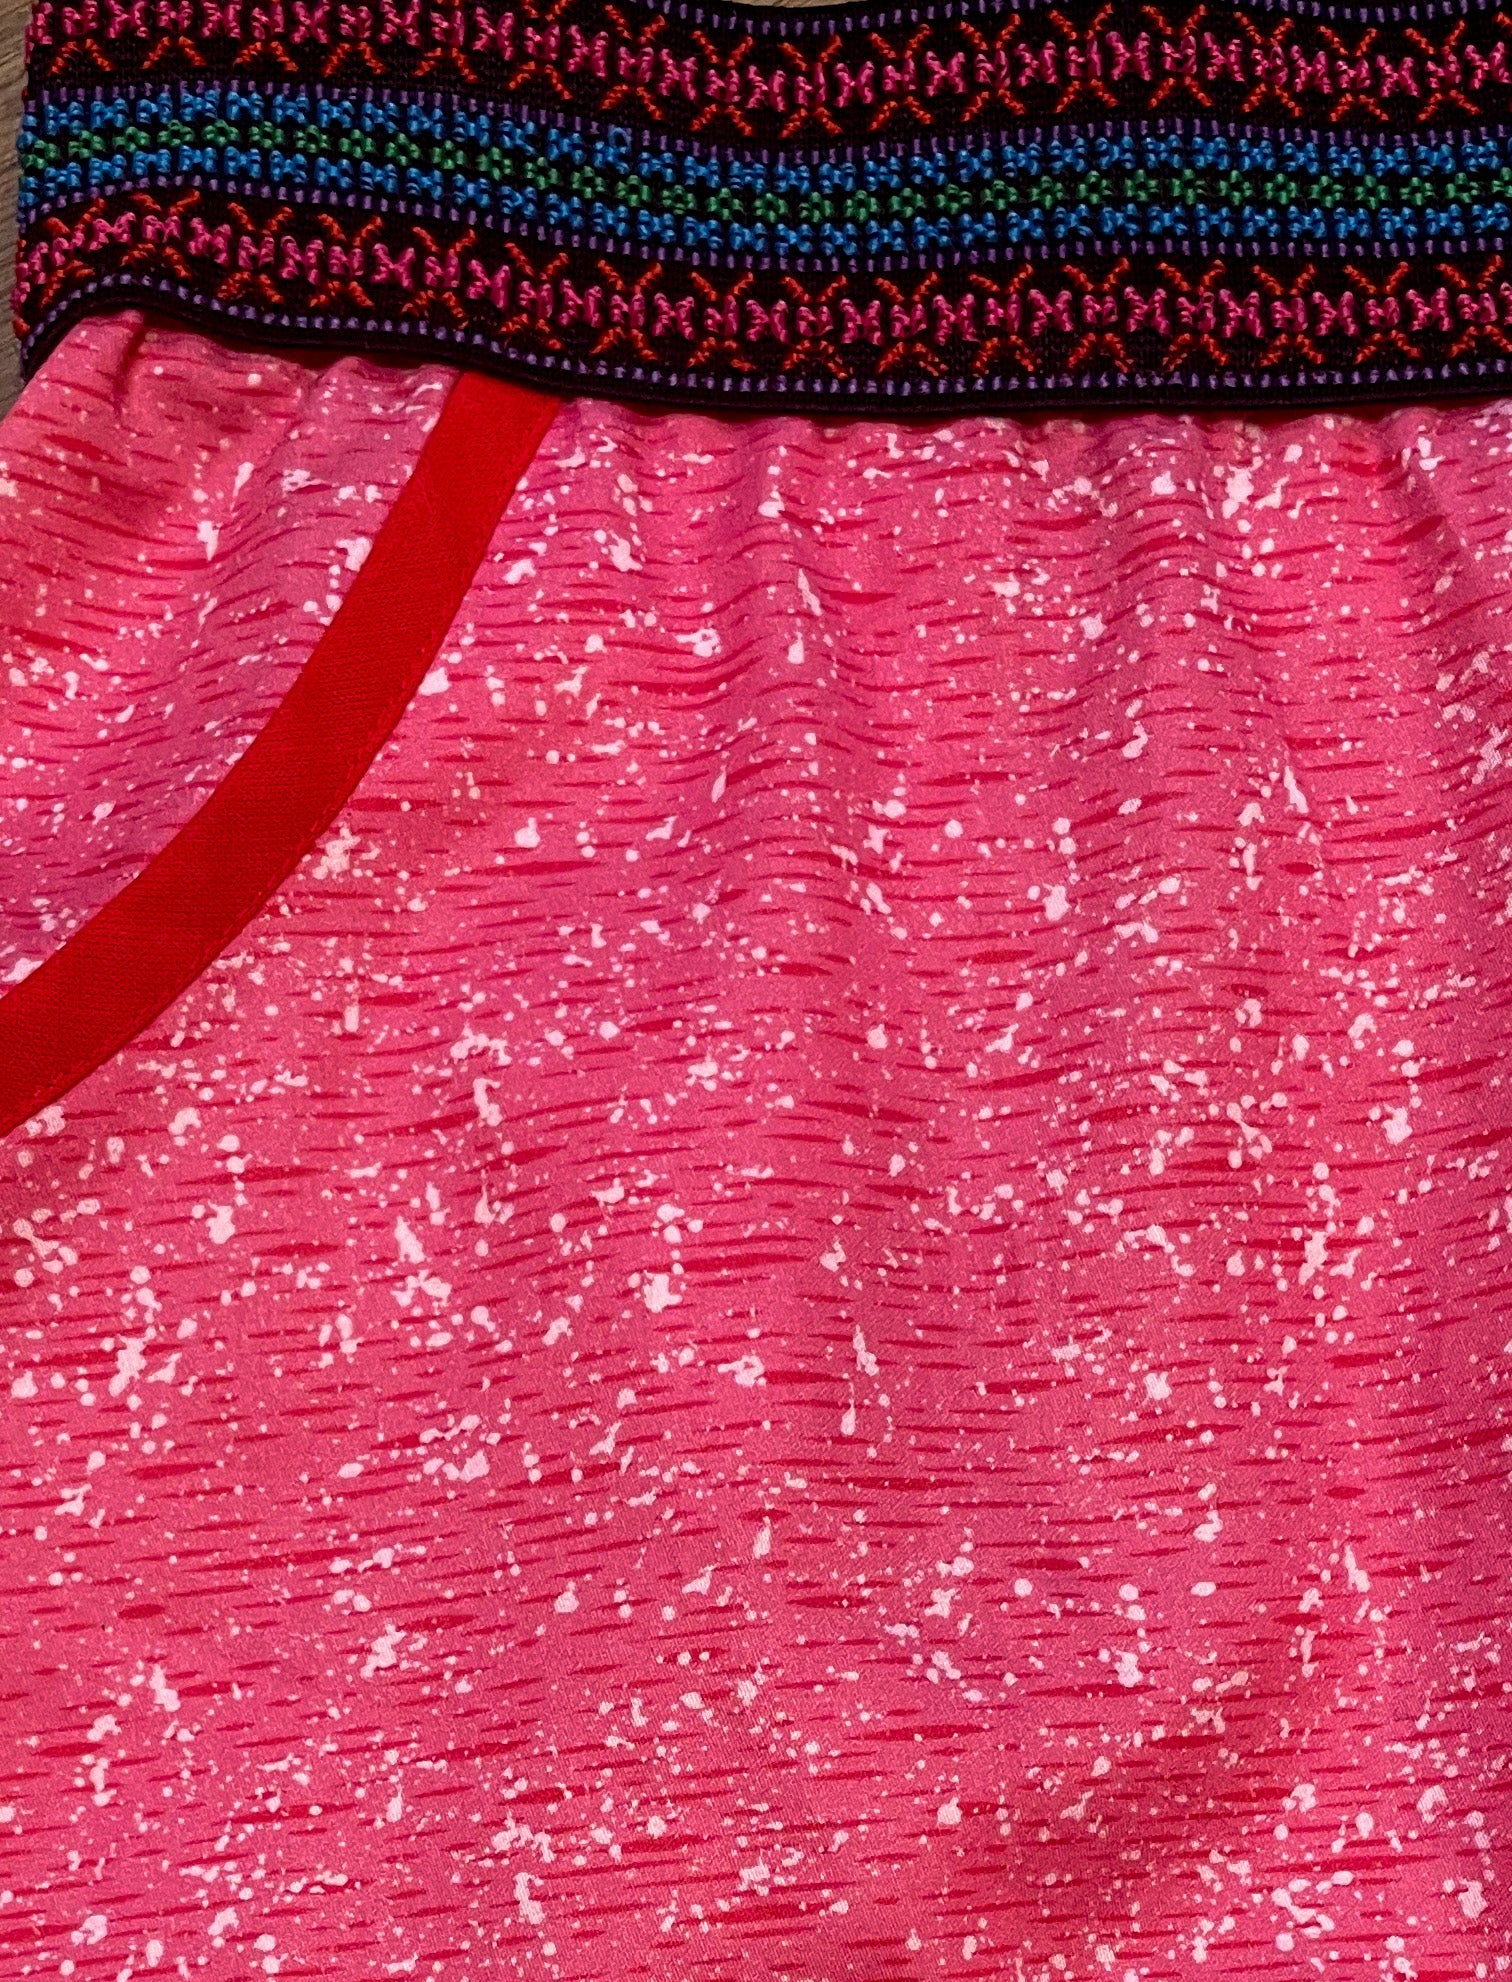 The 'Pink Frangipani' skirt